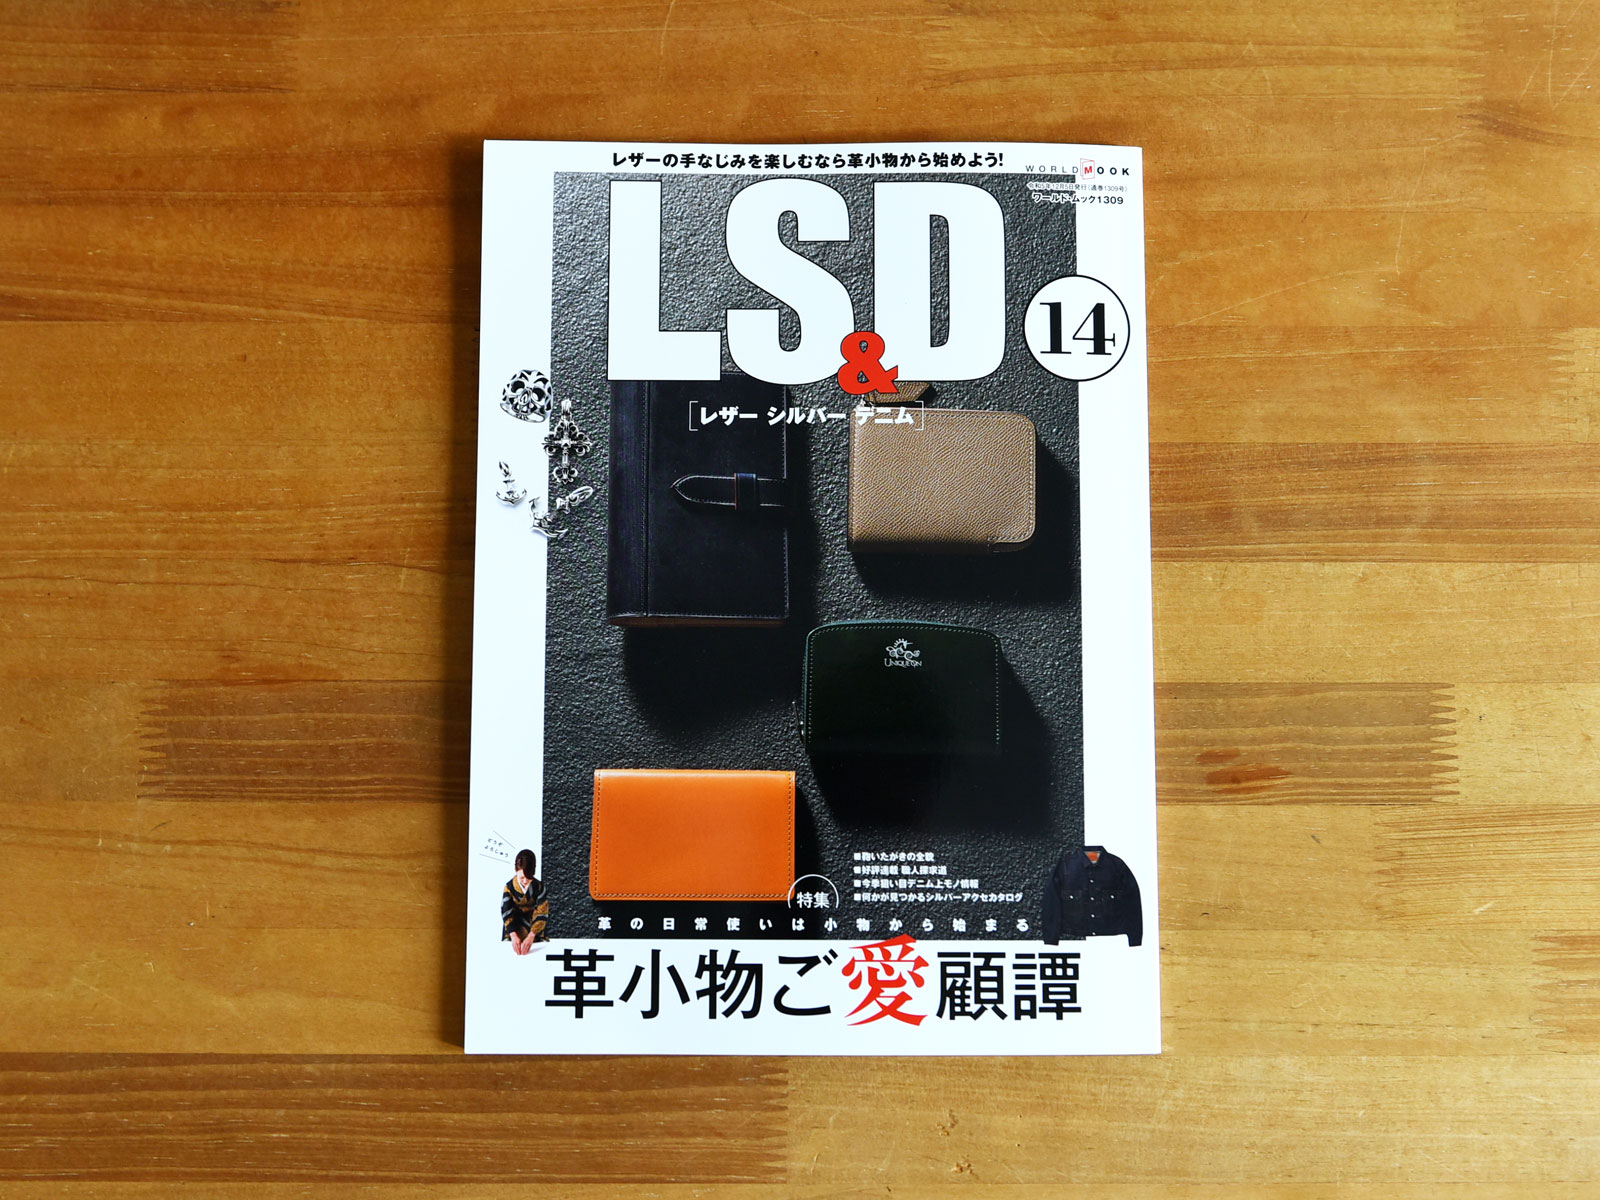 雑誌掲載のお知らせ「LS&D 14 レザー シルバー デニム」